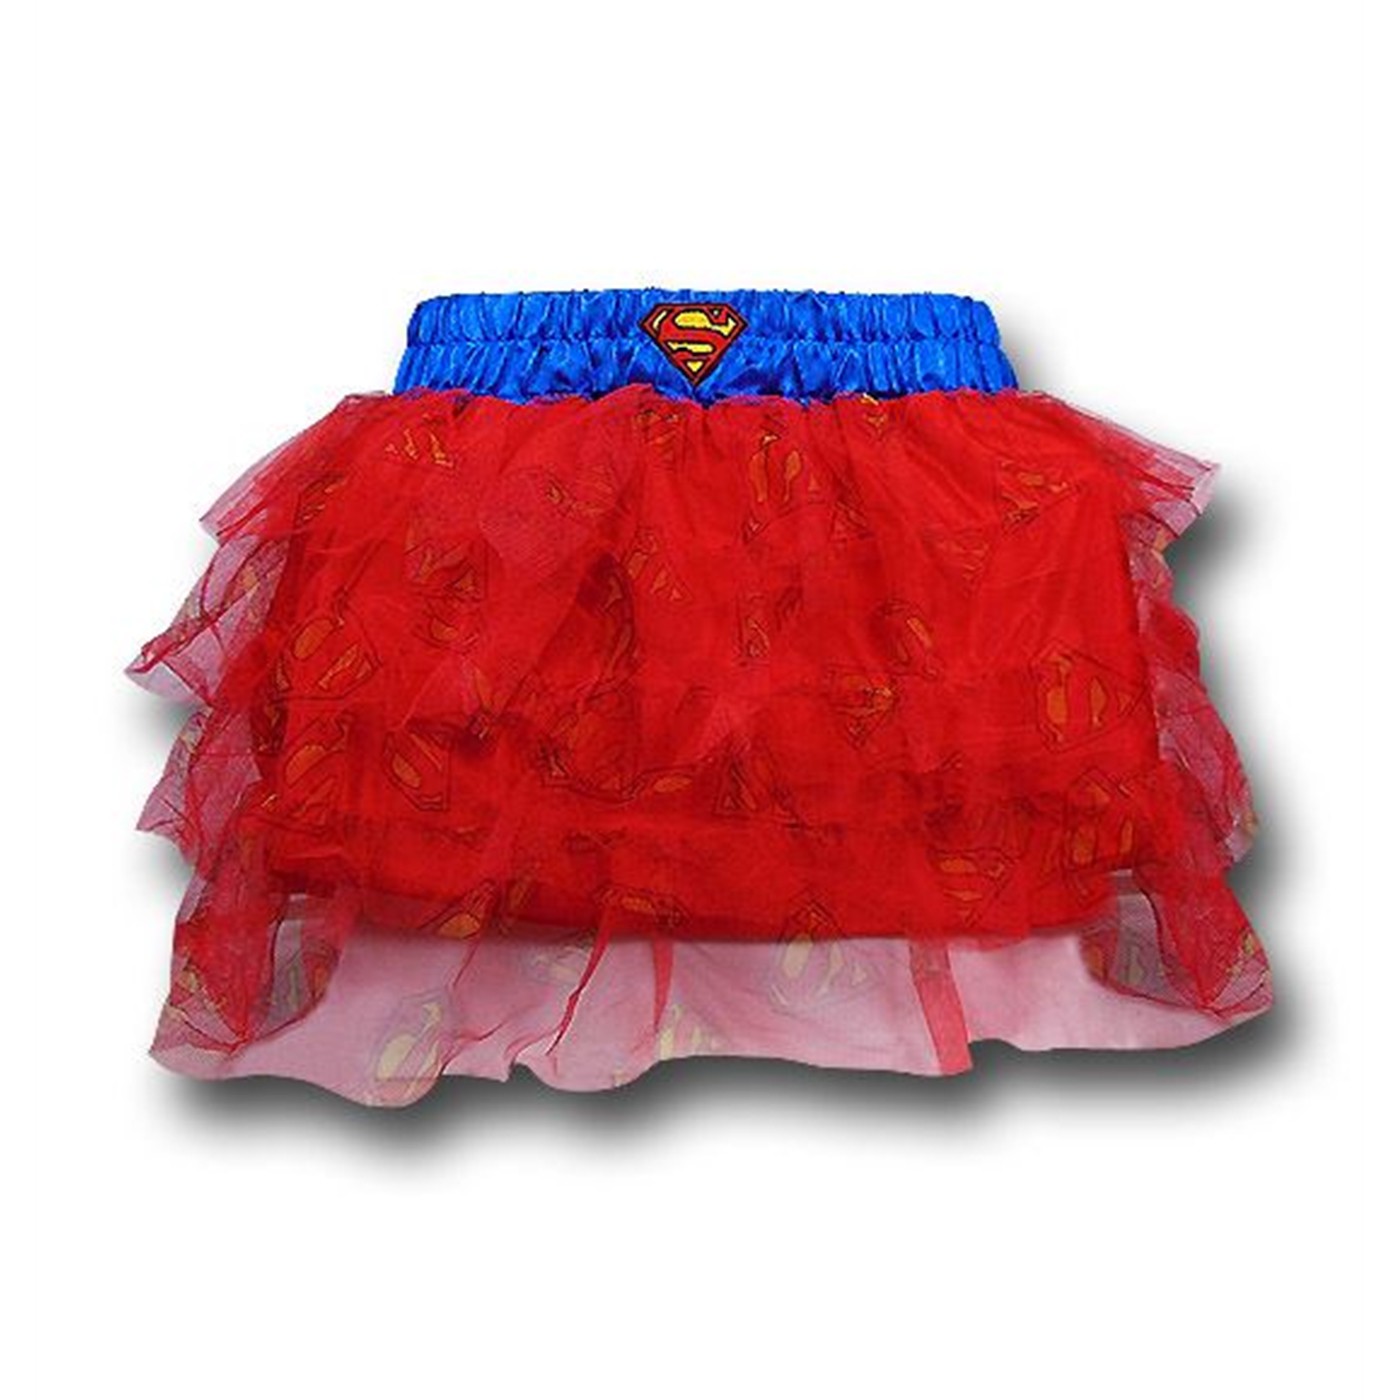 Supergirl Women's Costume Tutu